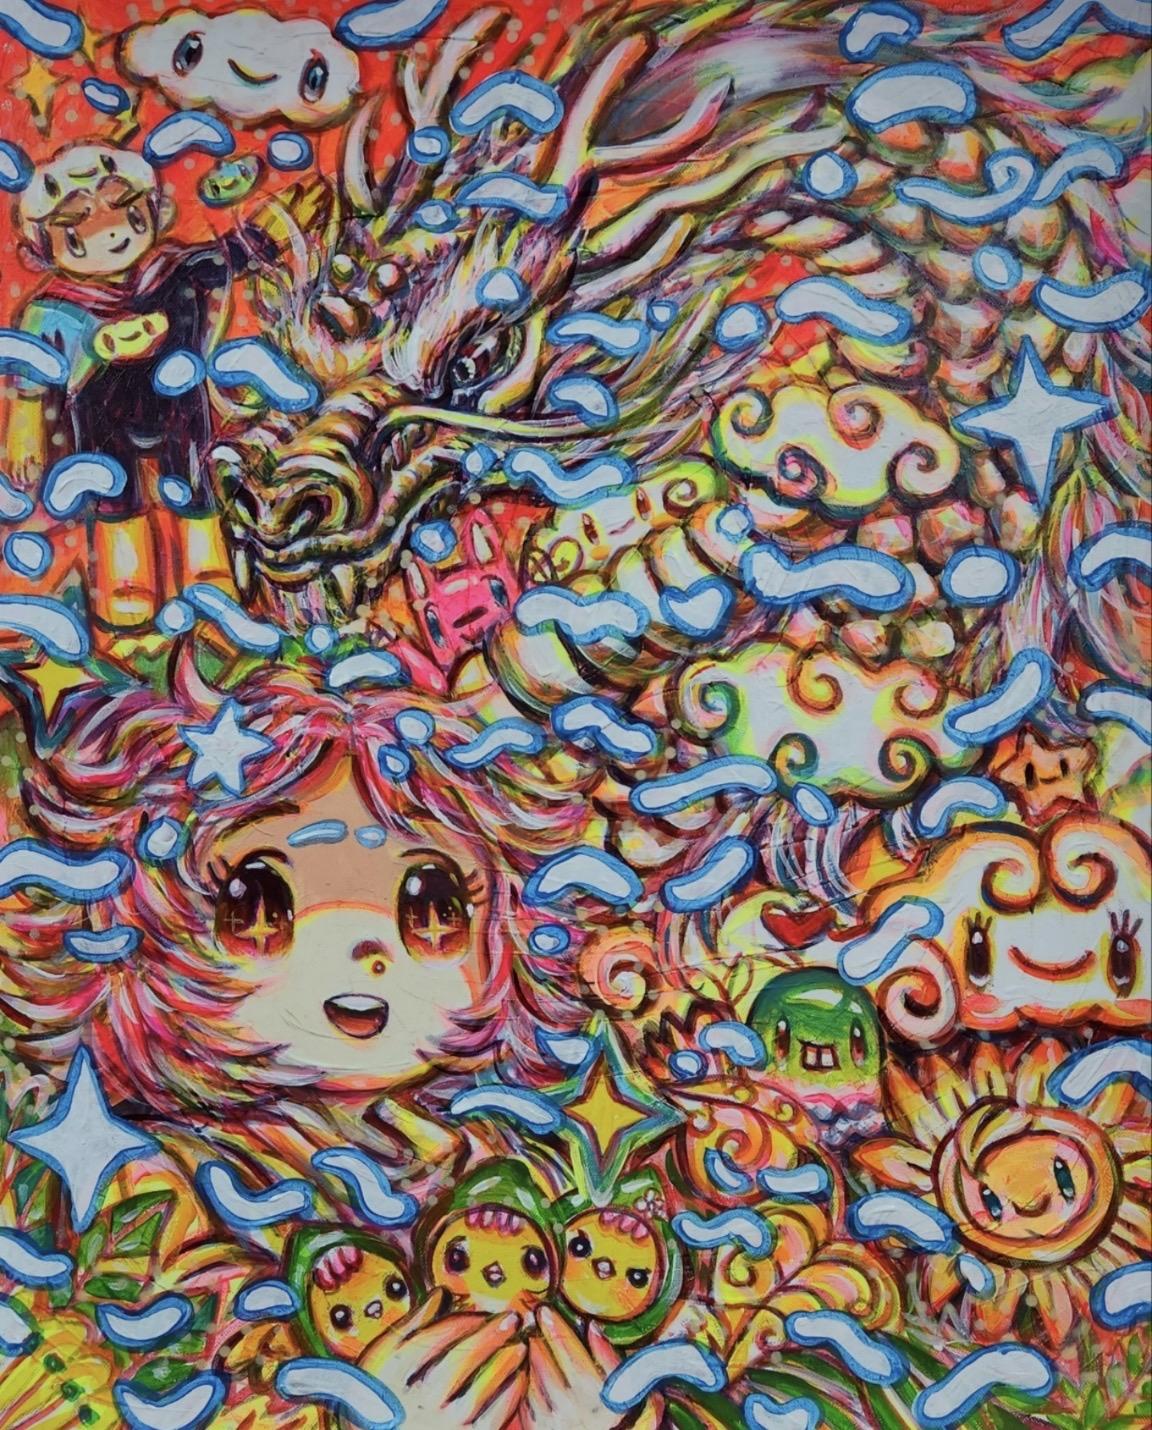 Acrylique sur toile

Shin Seung-Hun est un artiste sud-coréen né en 1979 qui vit et travaille sur l'île de Jeju, en Corée. Il est considéré par les critiques comme le nouveau Takashi Murakami coréen. Le monde pur de l'artiste dépeint et rêve d'un